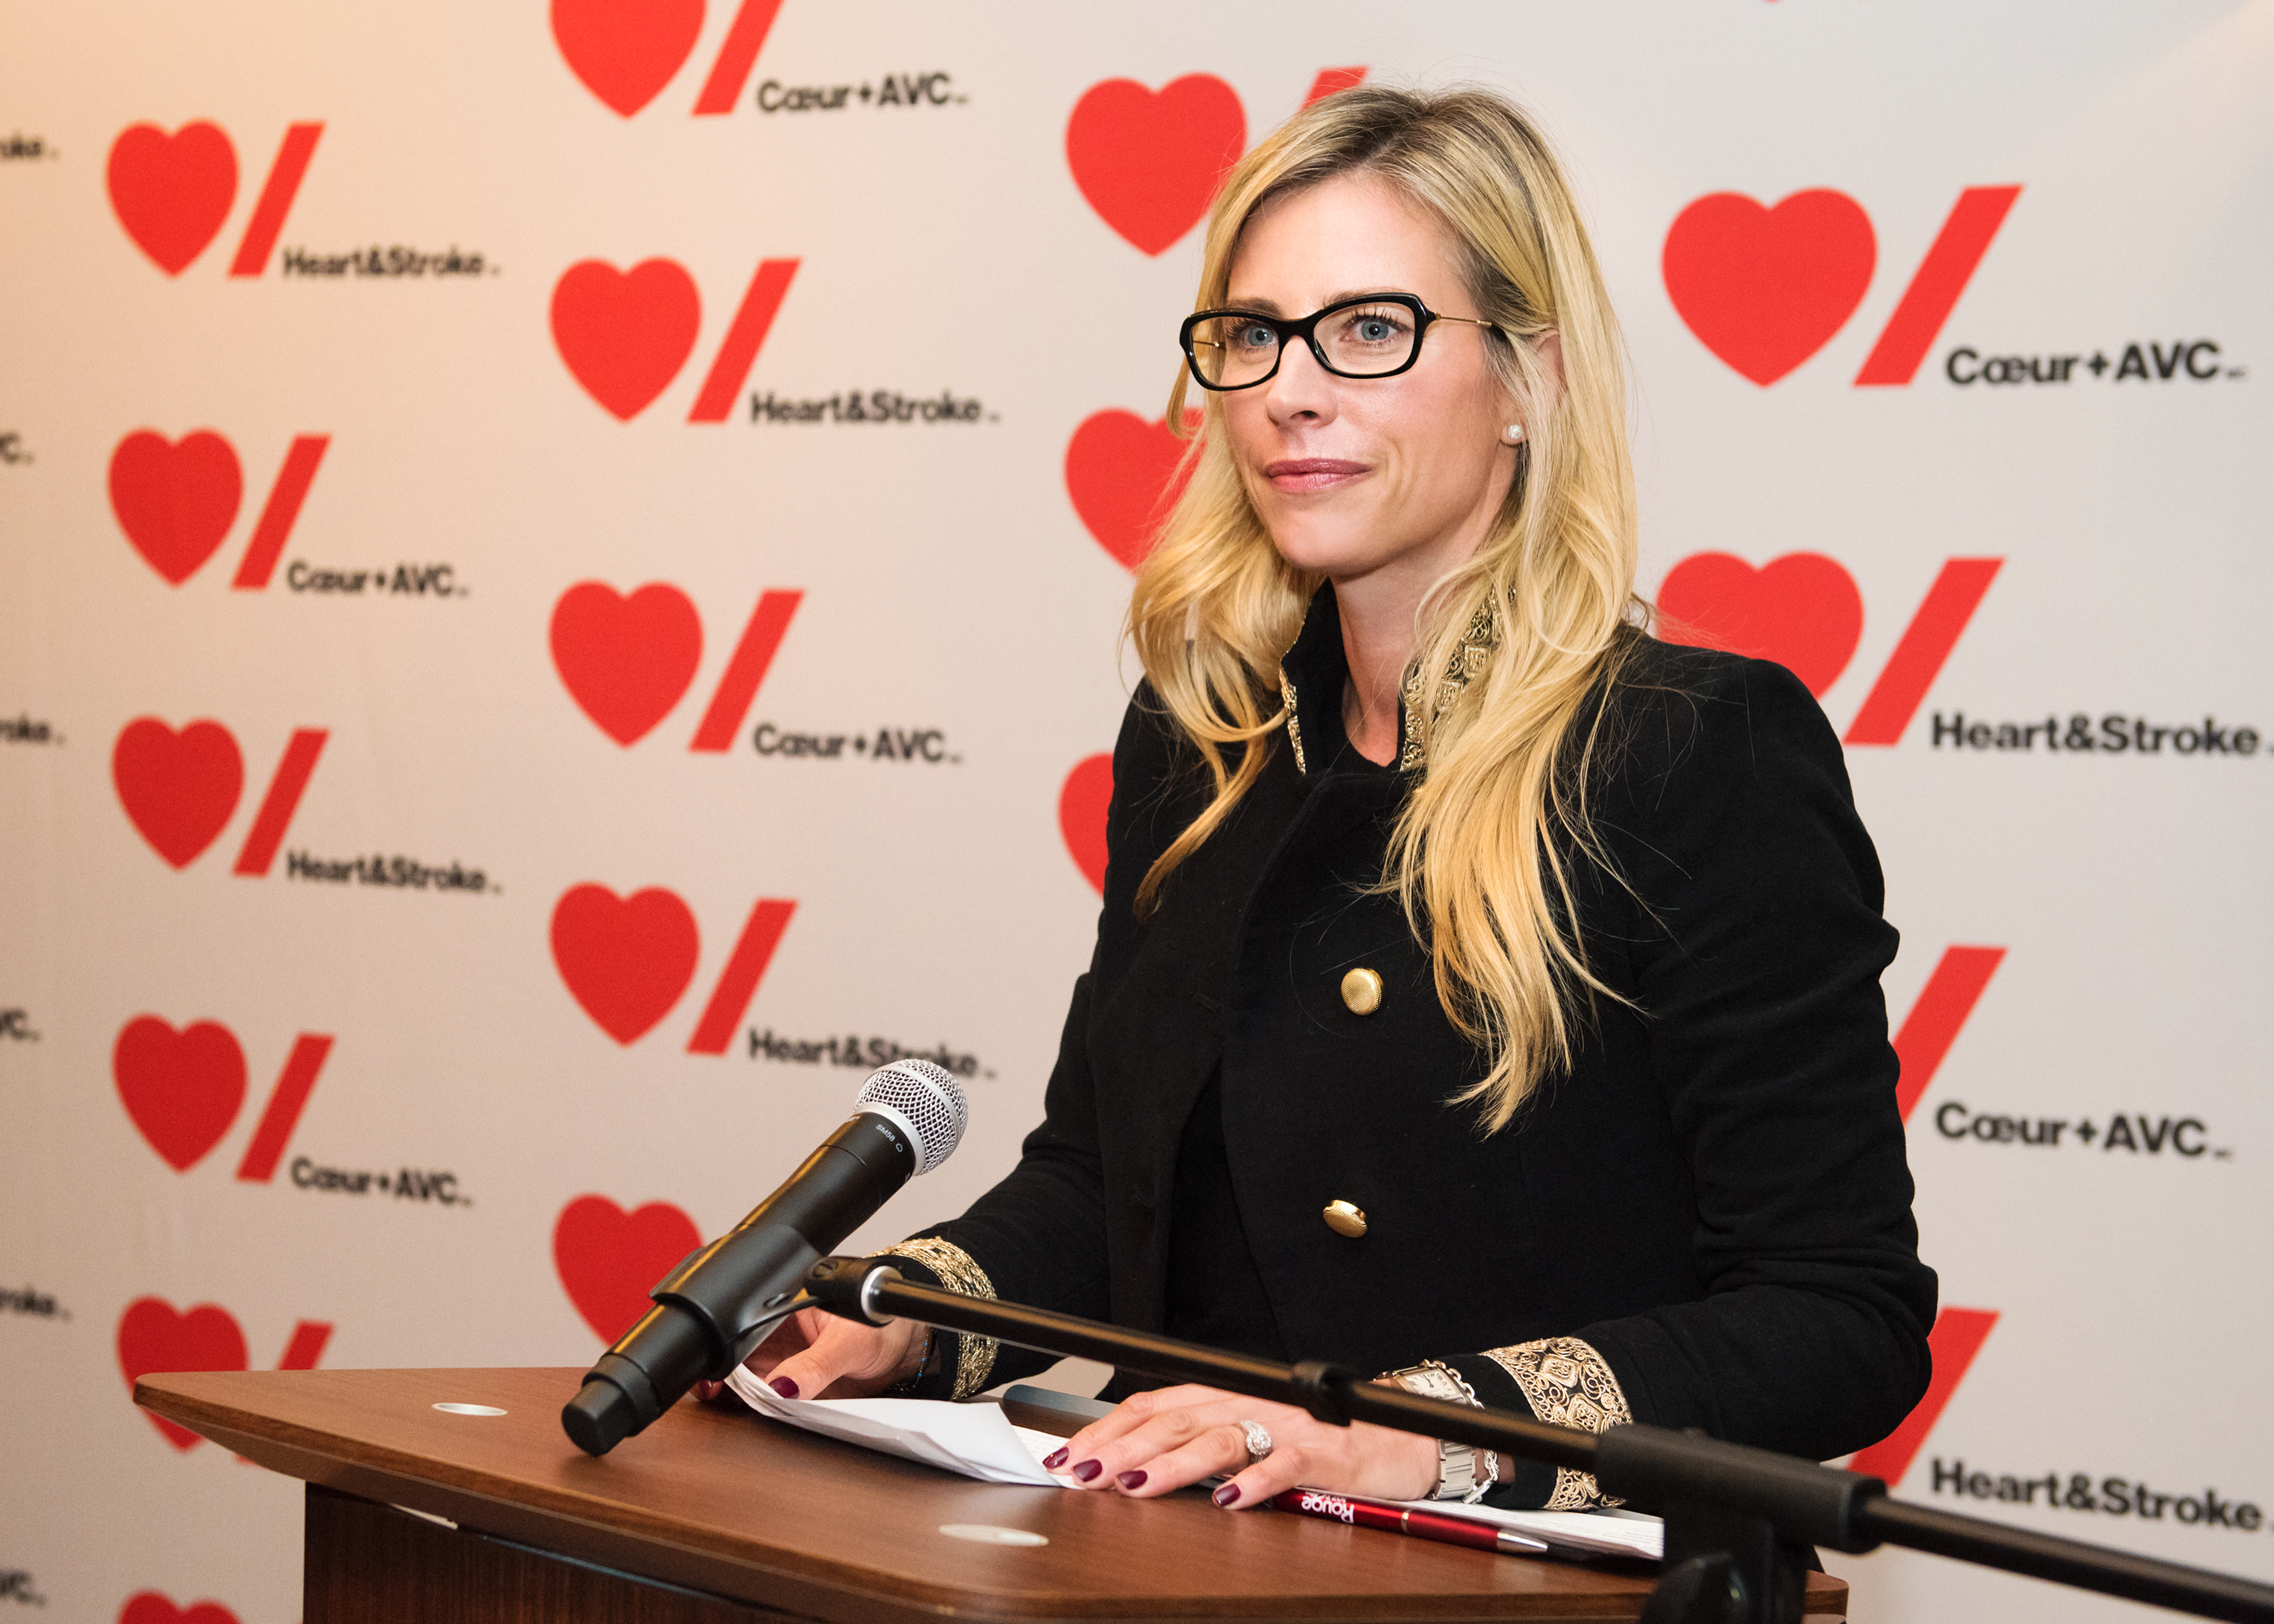 Julie du Page hosting the Heart Quebec evening in 2017.